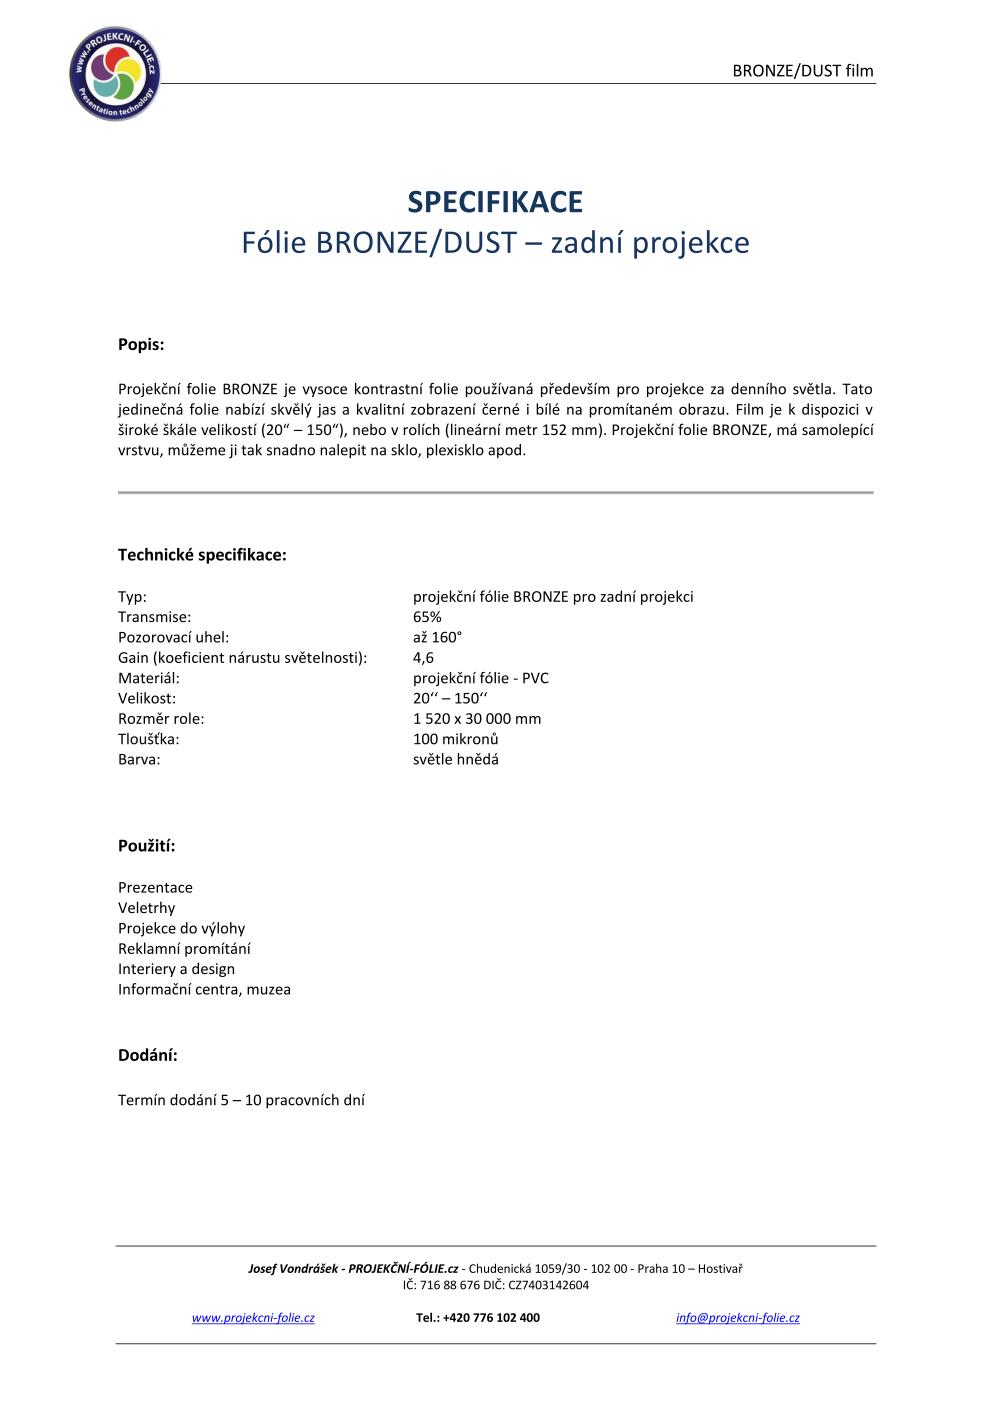 BRONZE / DUST - zadní projekce